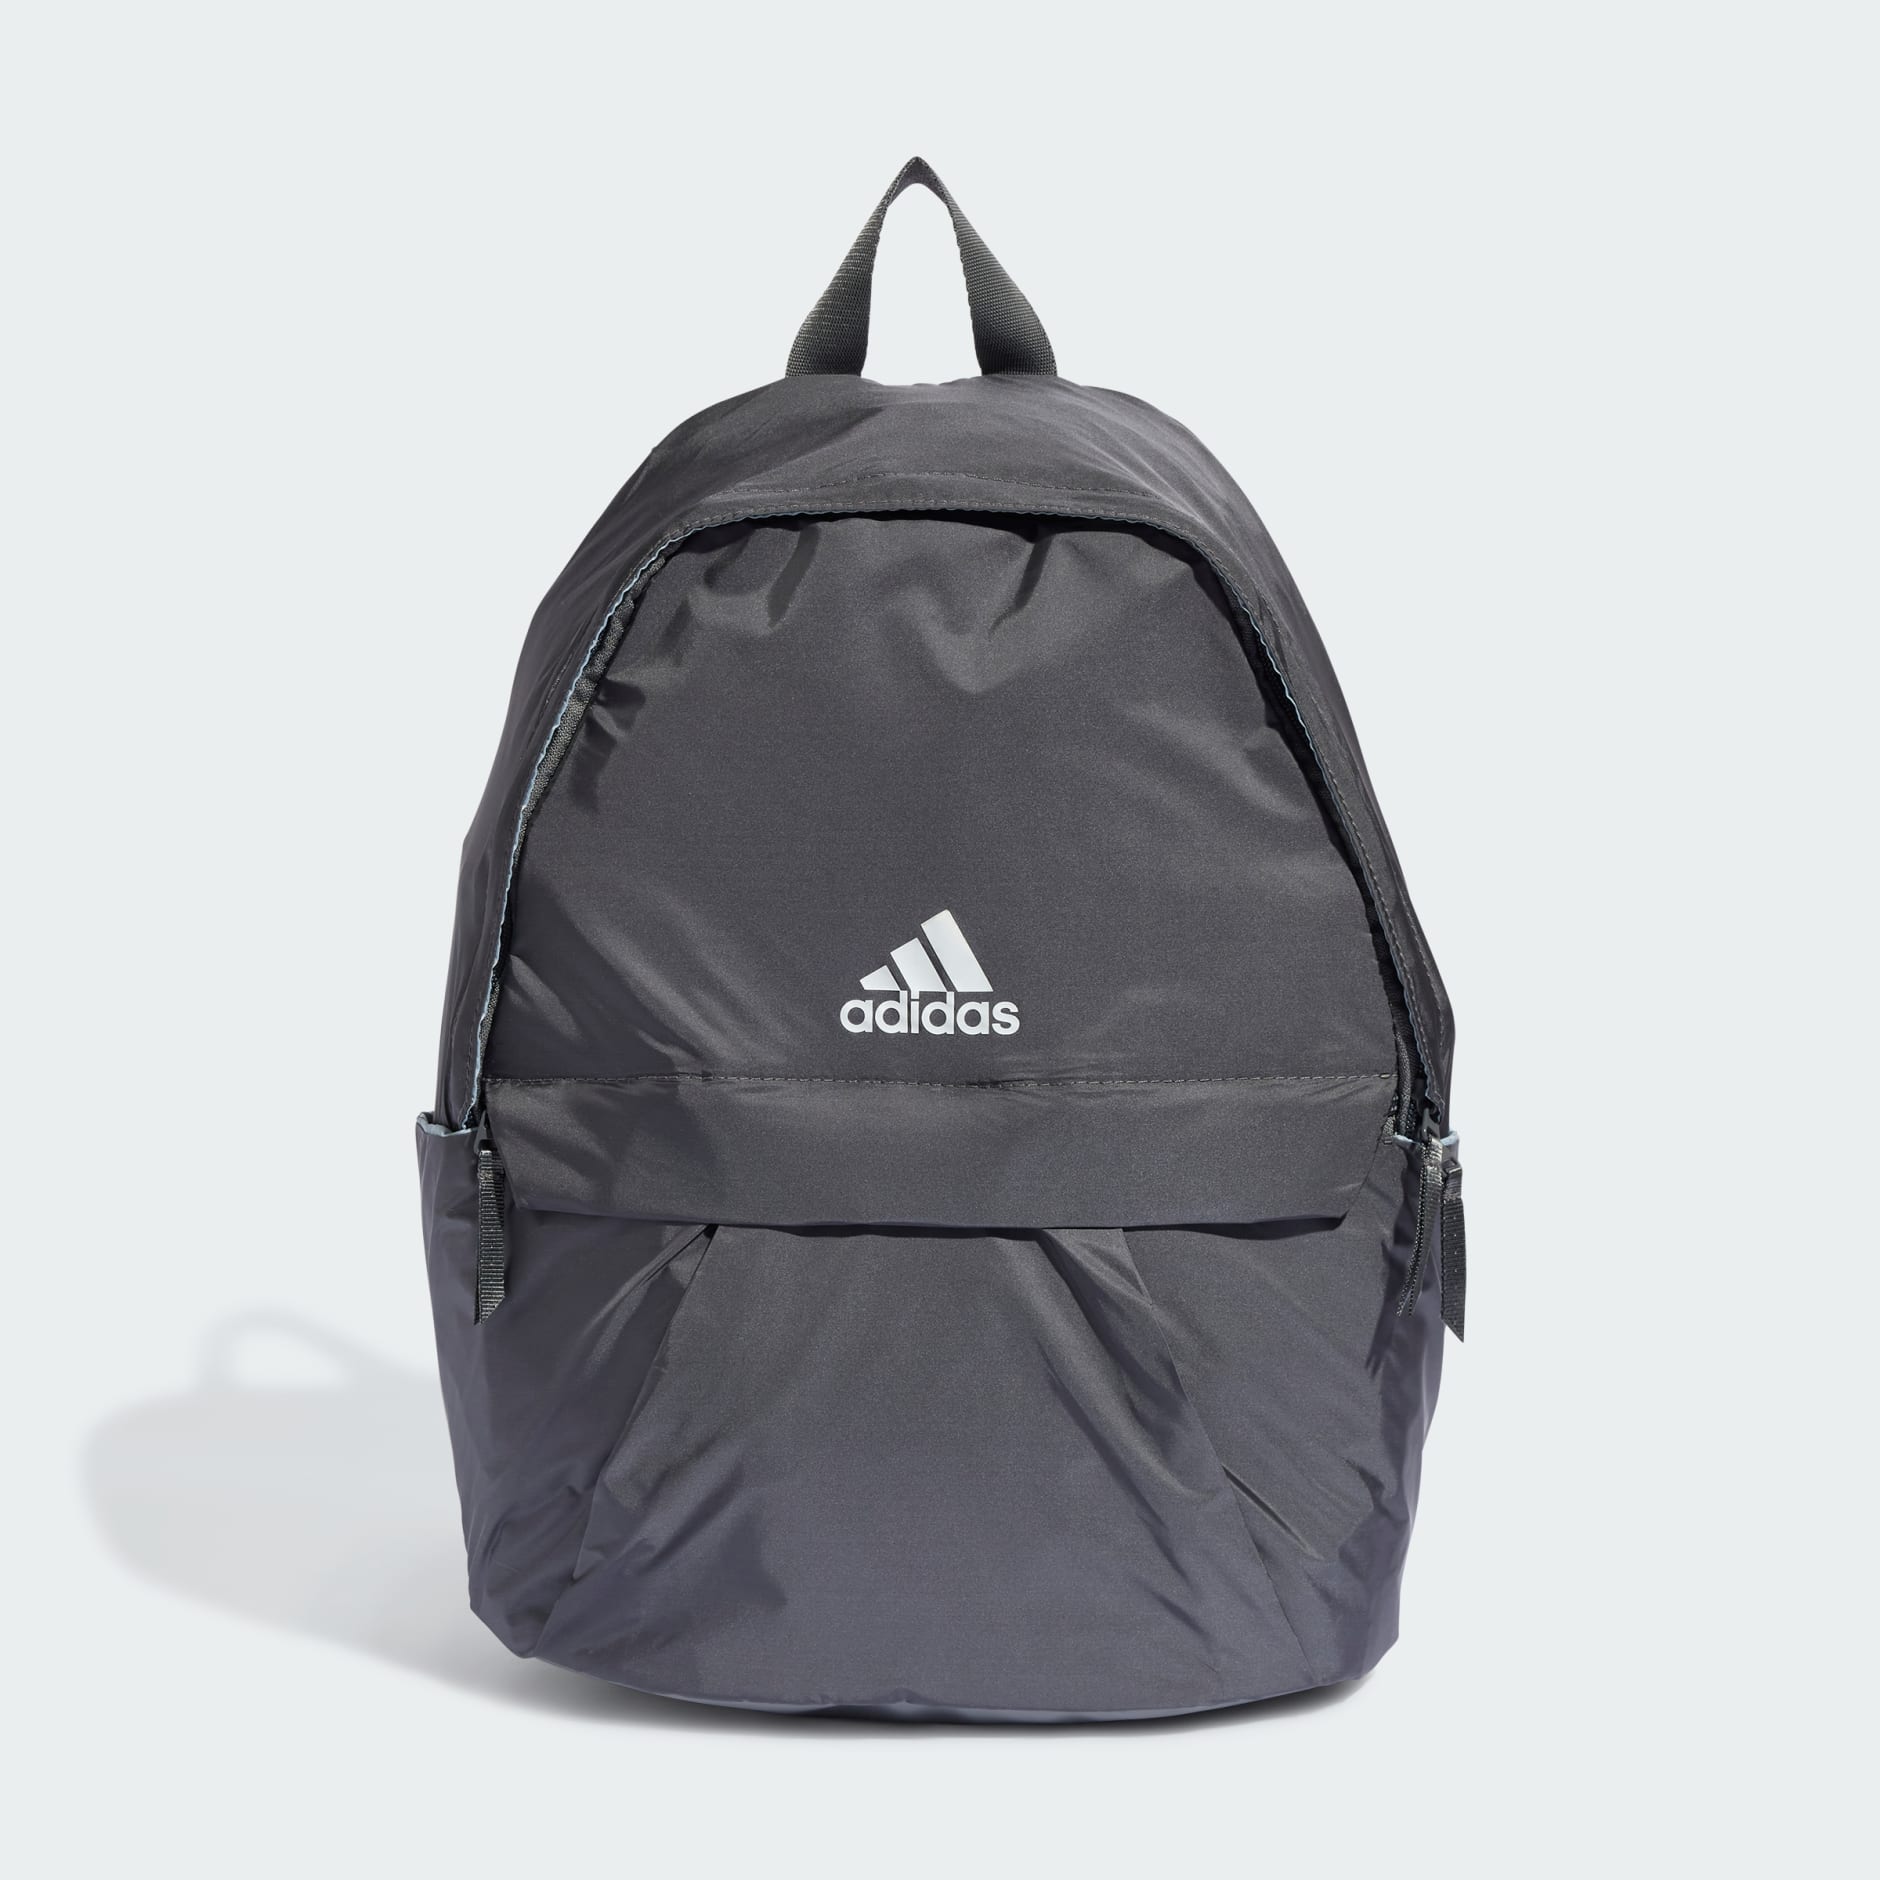 adidas Classic Gen Z Backpack - Grey | adidas LK